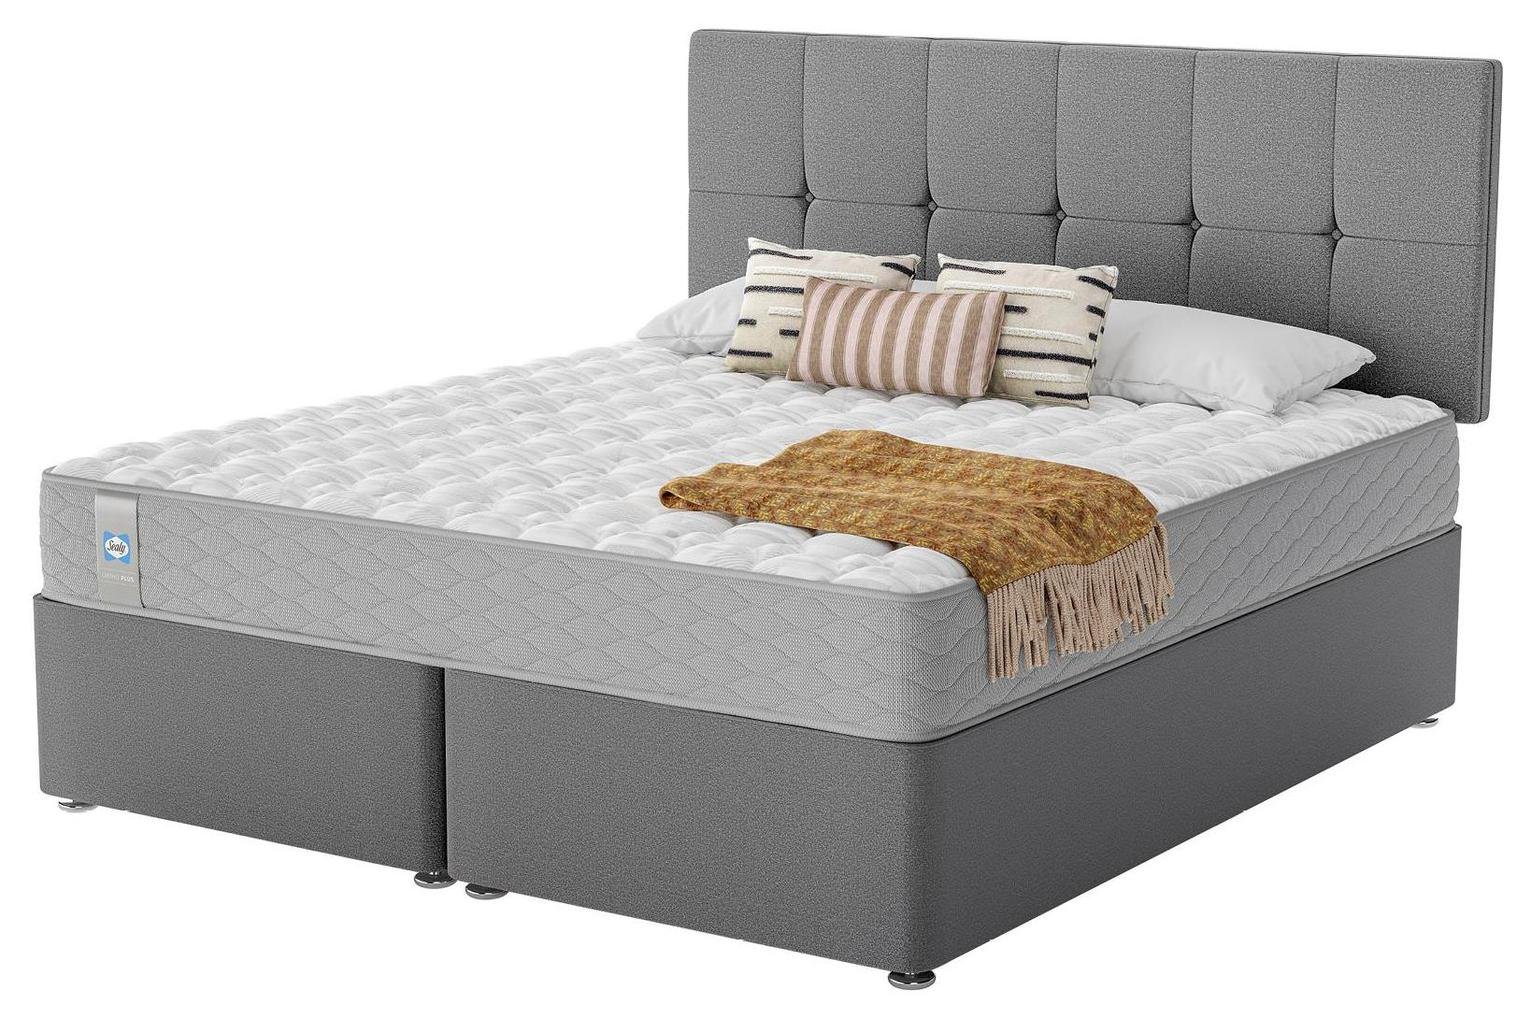 Sealy Eldon Comfort Superking Divan Bed - Grey